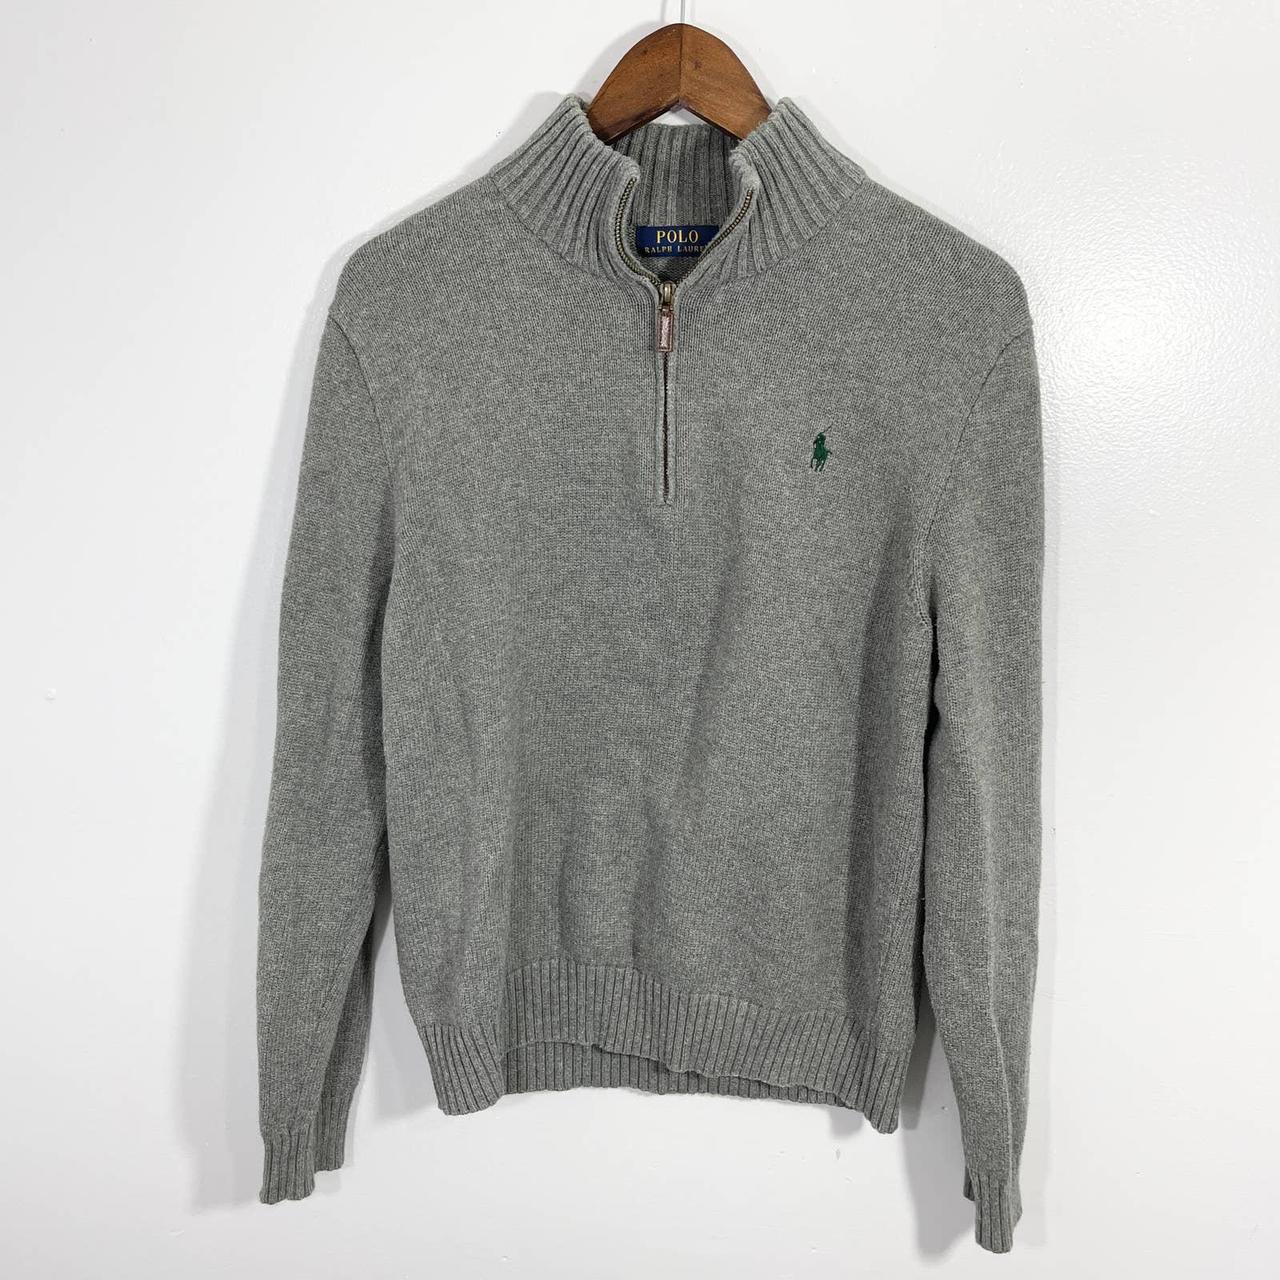 Polo Ralph Lauren 1/4 Zip Sweater Adult Medium M... - Depop